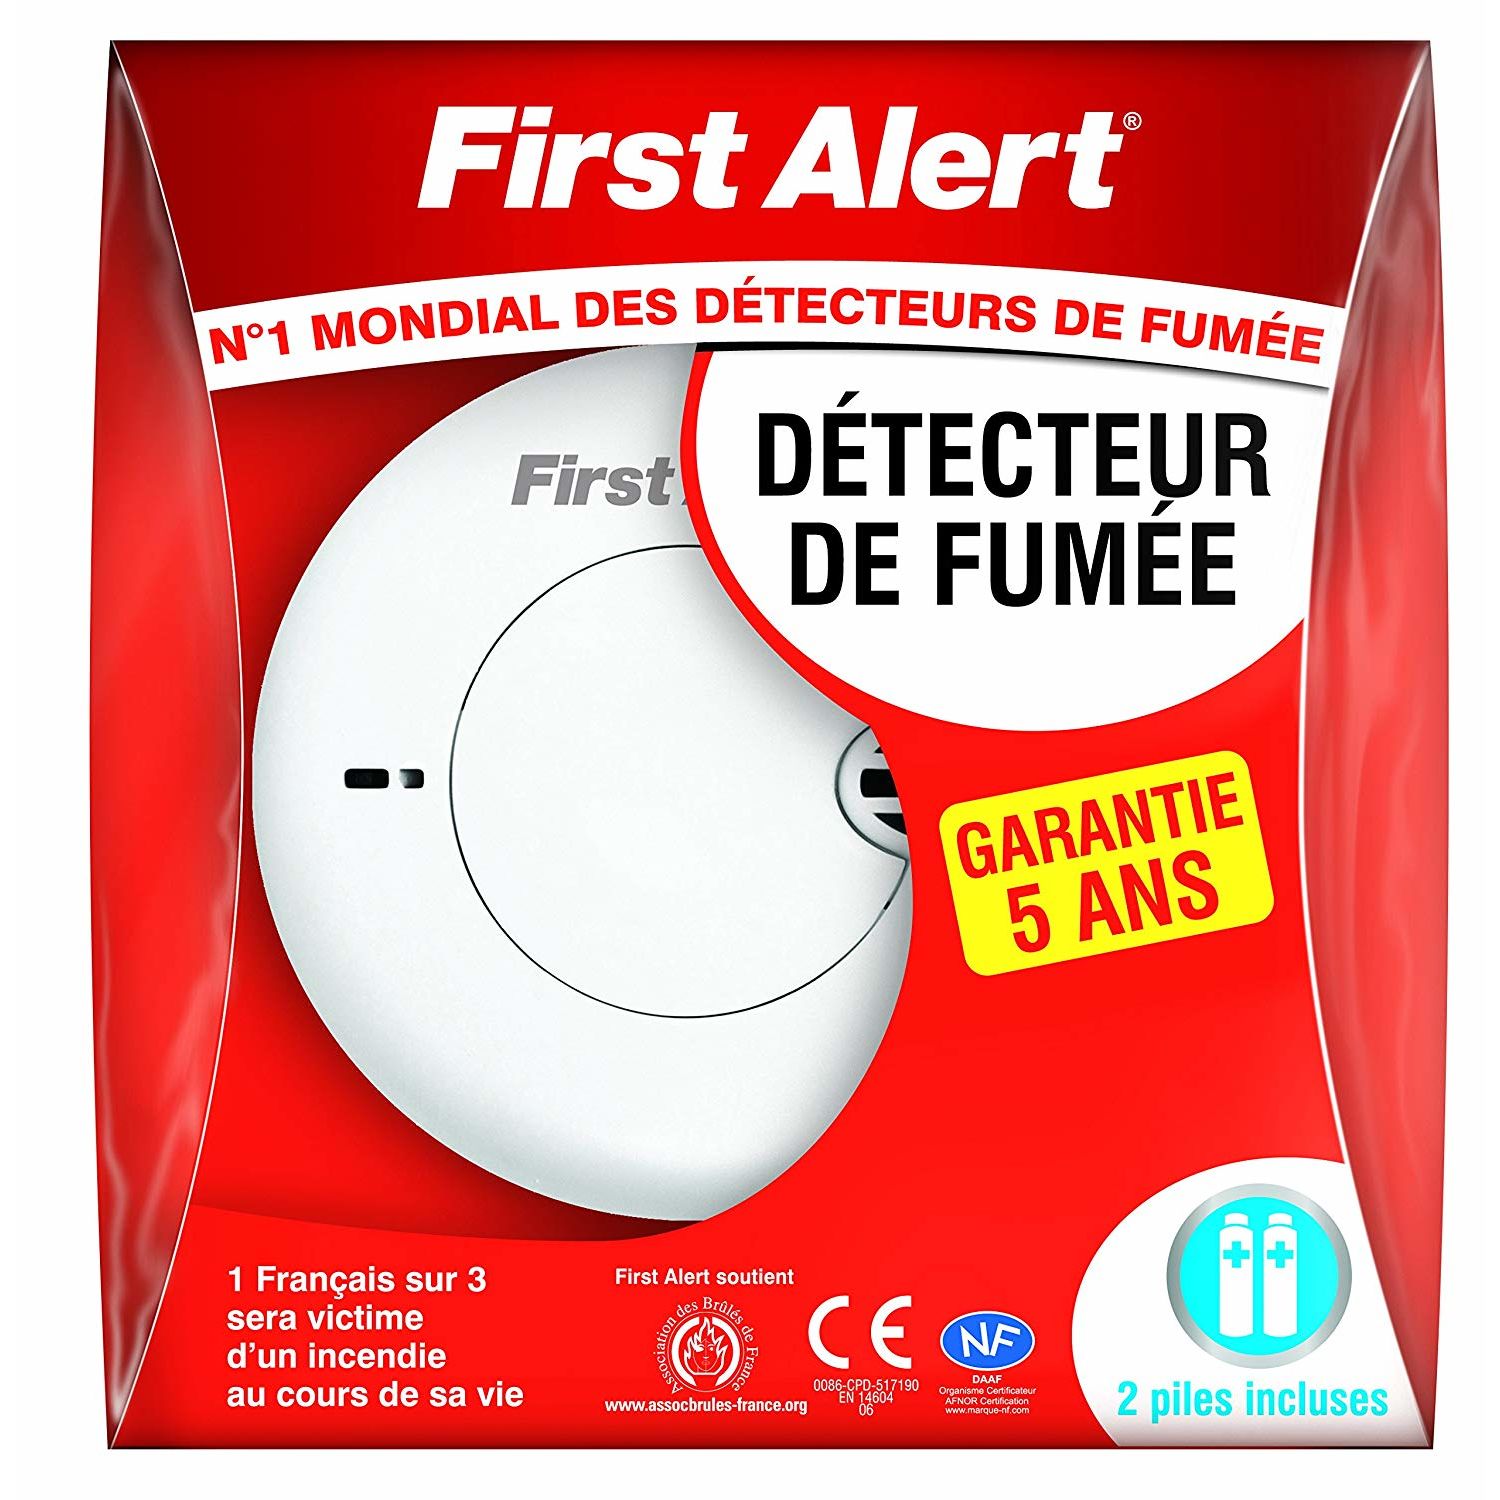 Electromenager :: First Alert - Détecteur De Fumée NF Compact (SA700BF)